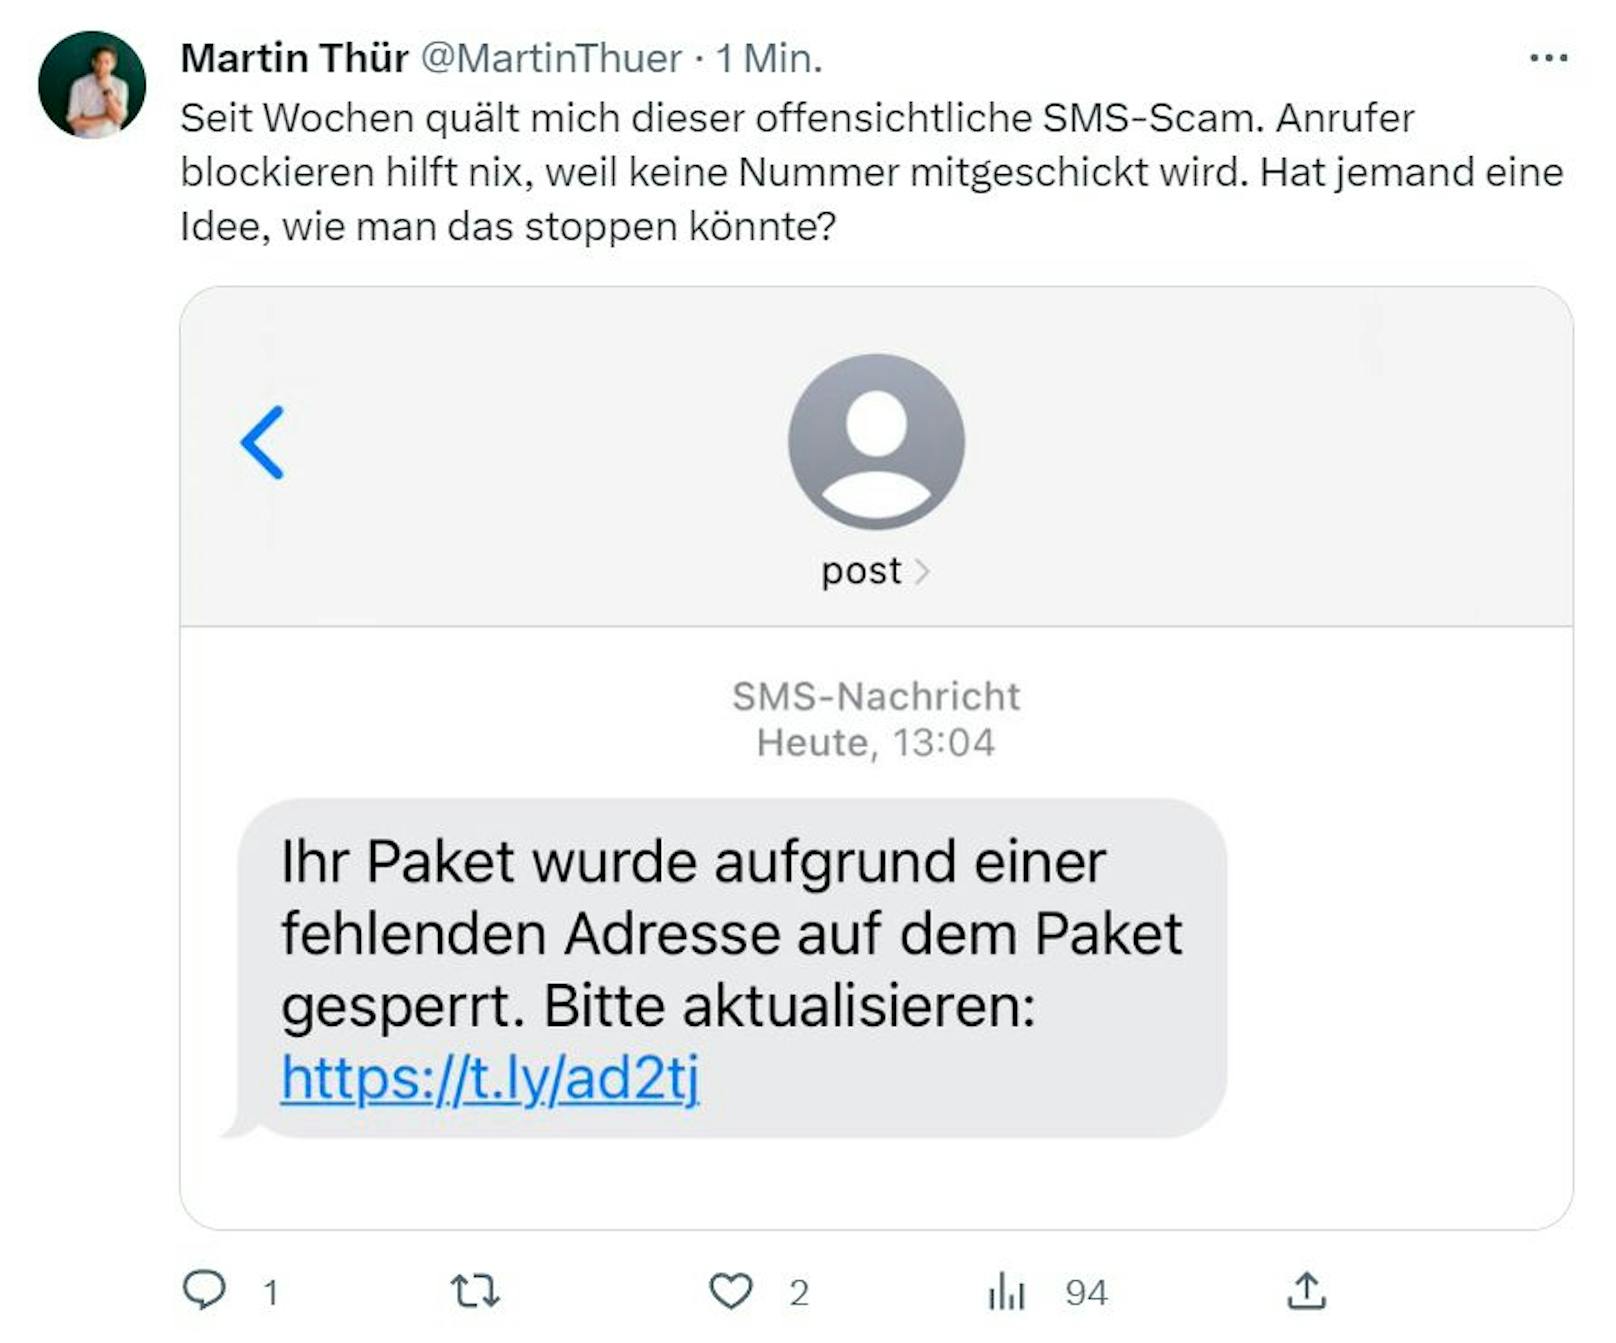 Martin Thür wird von Betrügern heimgesucht: "Seit Wochen quält mich dieser offensichtliche SMS-Scam. Anrufer blockieren hilft nix".